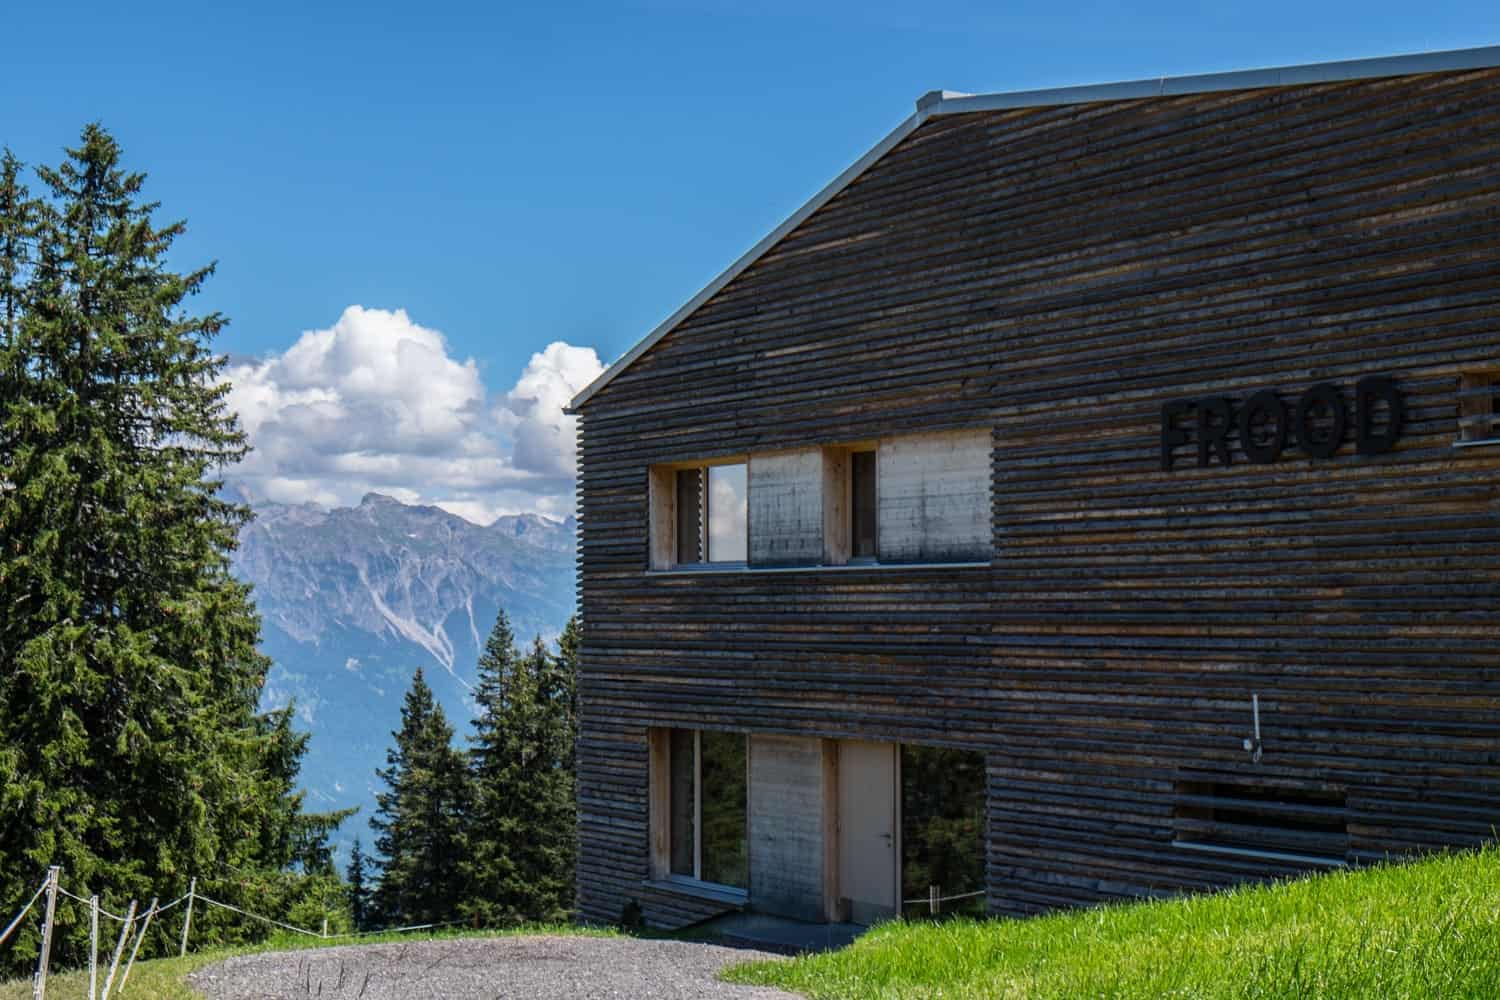 Frood Mountain restaurant in Brandnetal, Vorarlberg, Austria